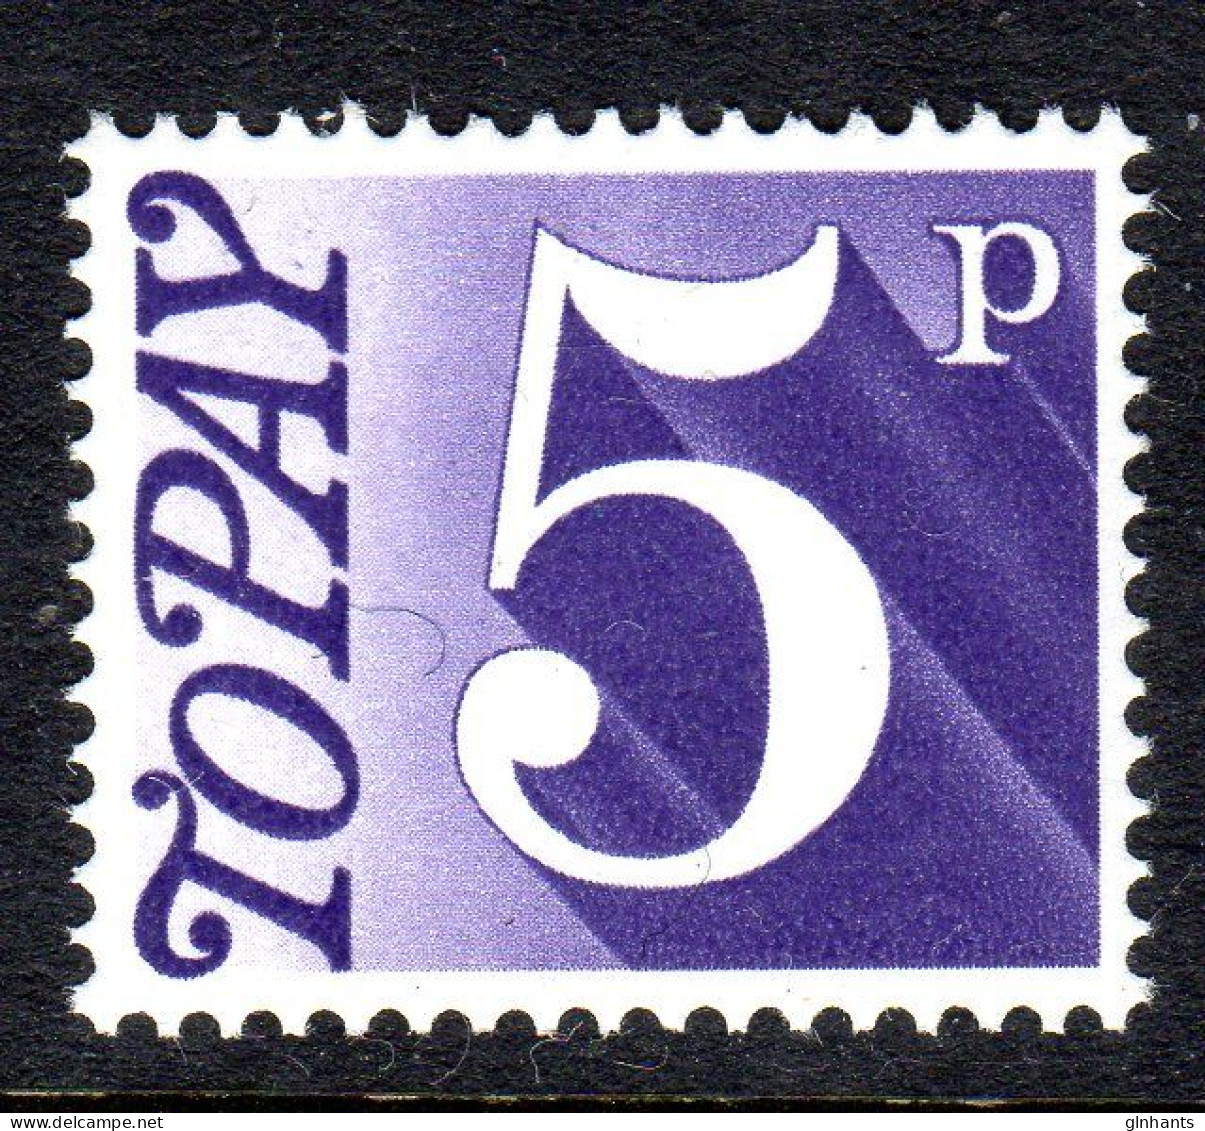 GREAT BRITAIN GB - 1970 POSTAGE DUE 5p STAMP FINE MNH ** SG D82 - Portomarken